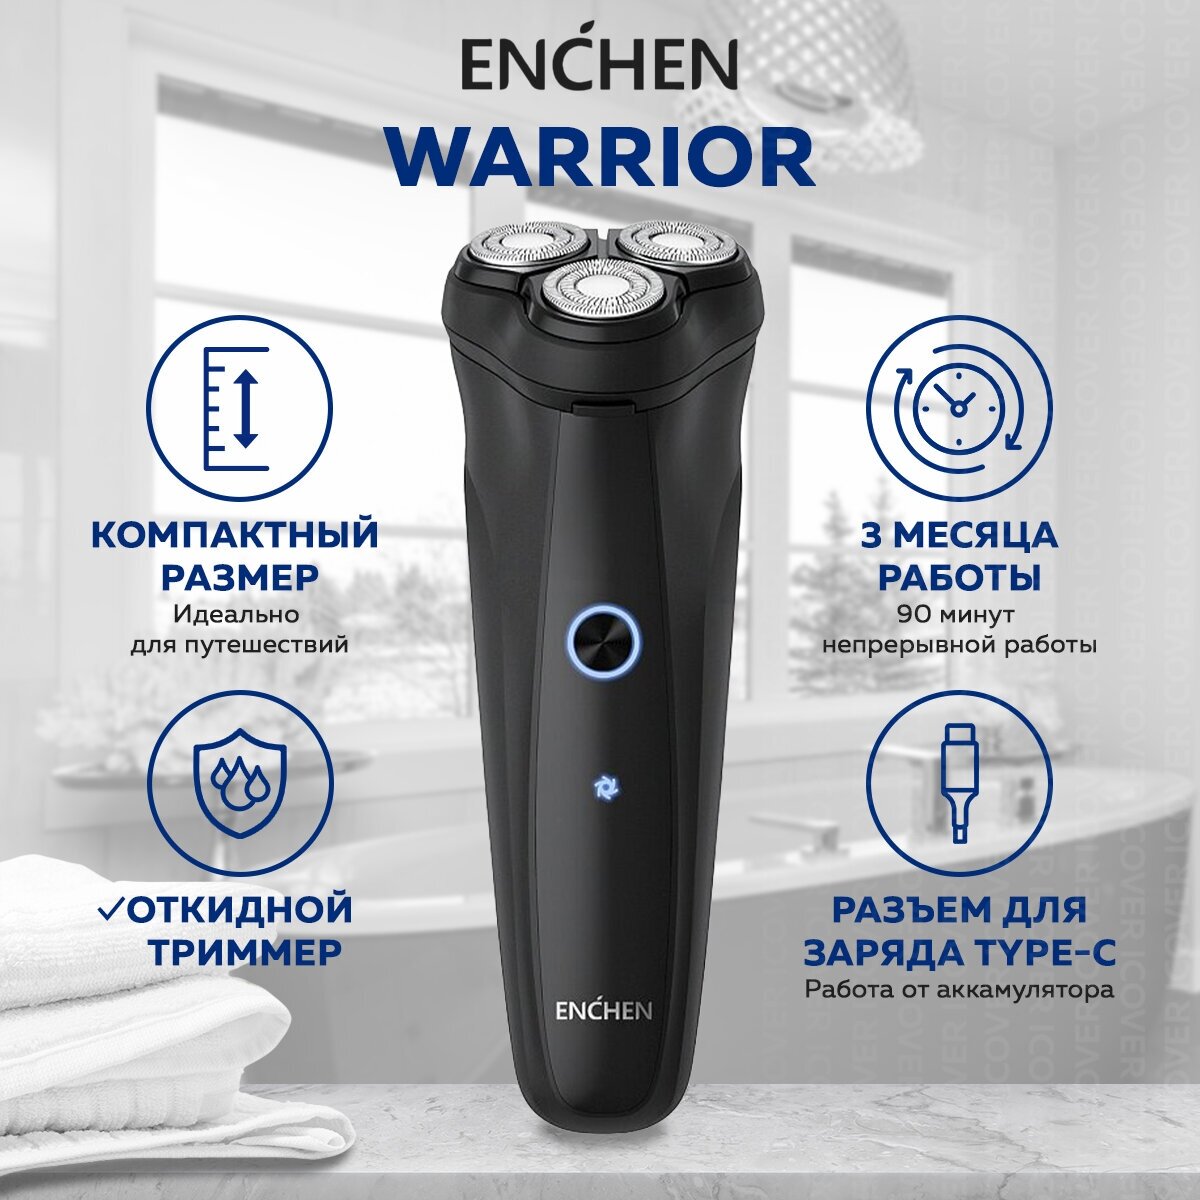 Электробритва Enchen Warrior, черный / Роторная бритва, триммер для мужчин электрическая с плавающими головками для сухого и влажного бритья